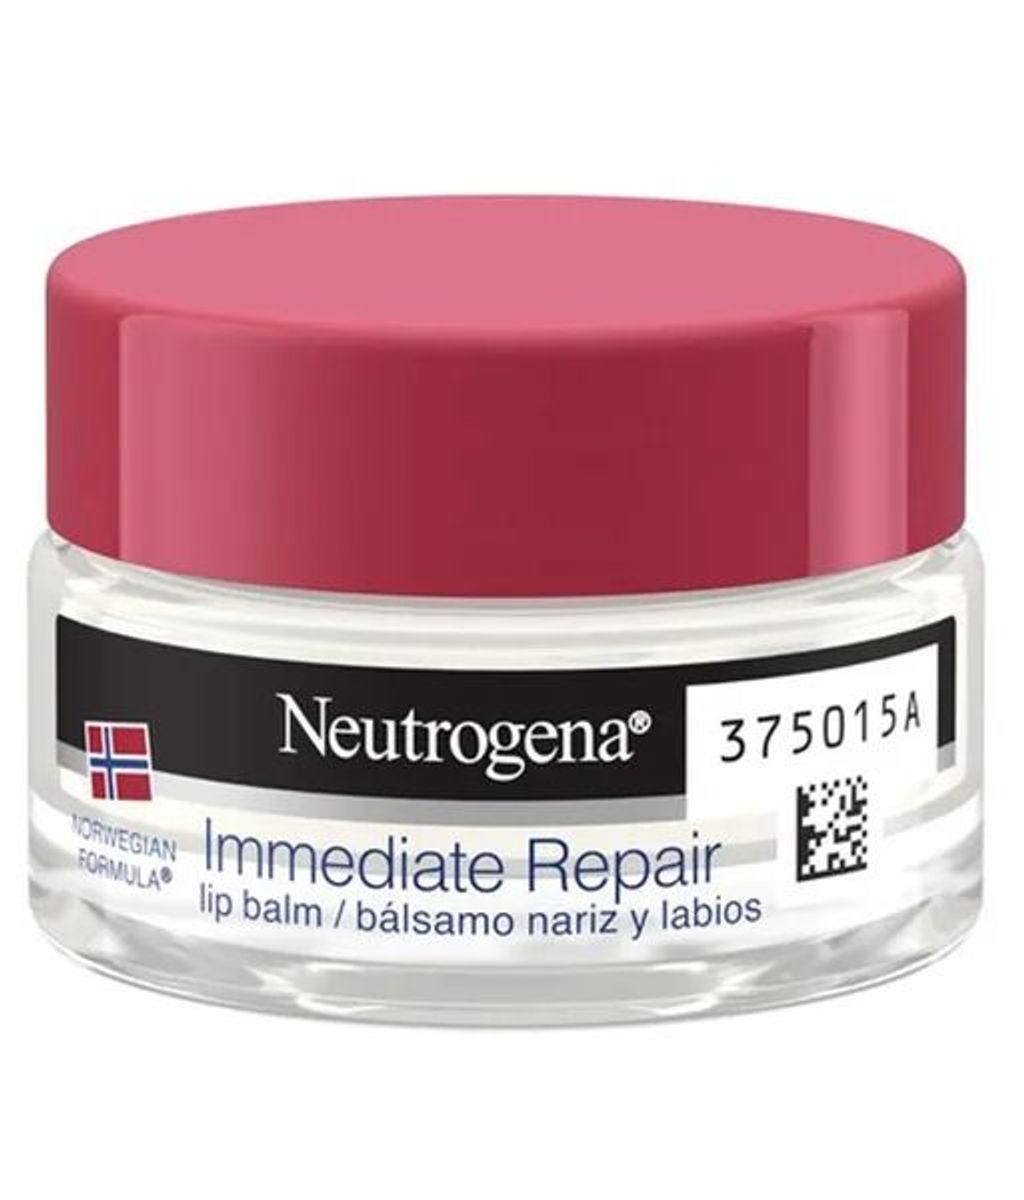 Immediate Repair de Neutrogena